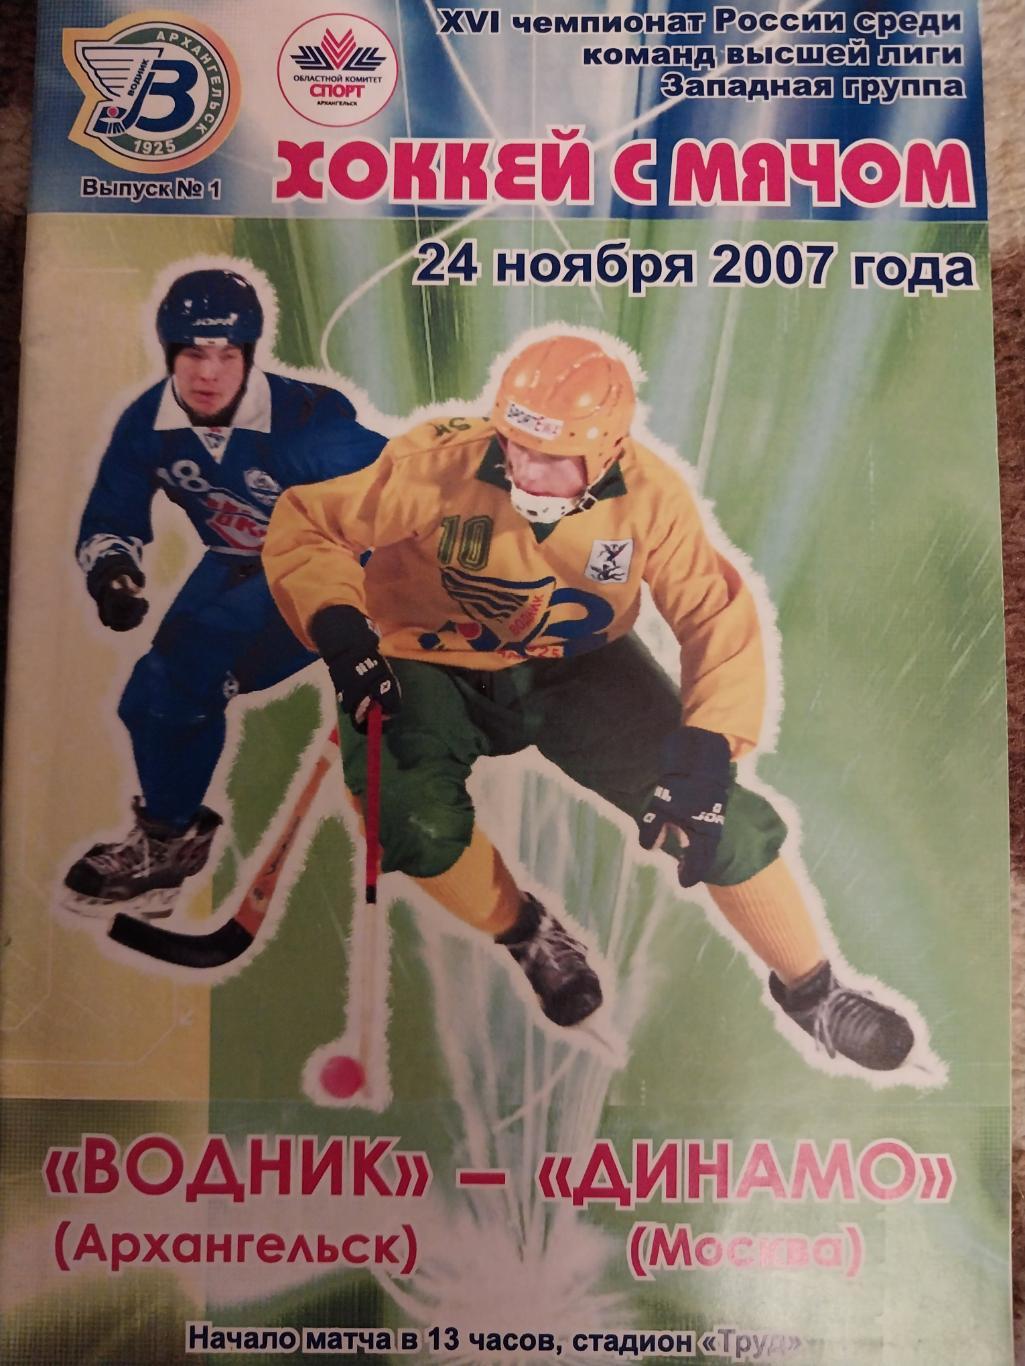 Водник (Архангельск) - Динамо Москва 24.11.2007